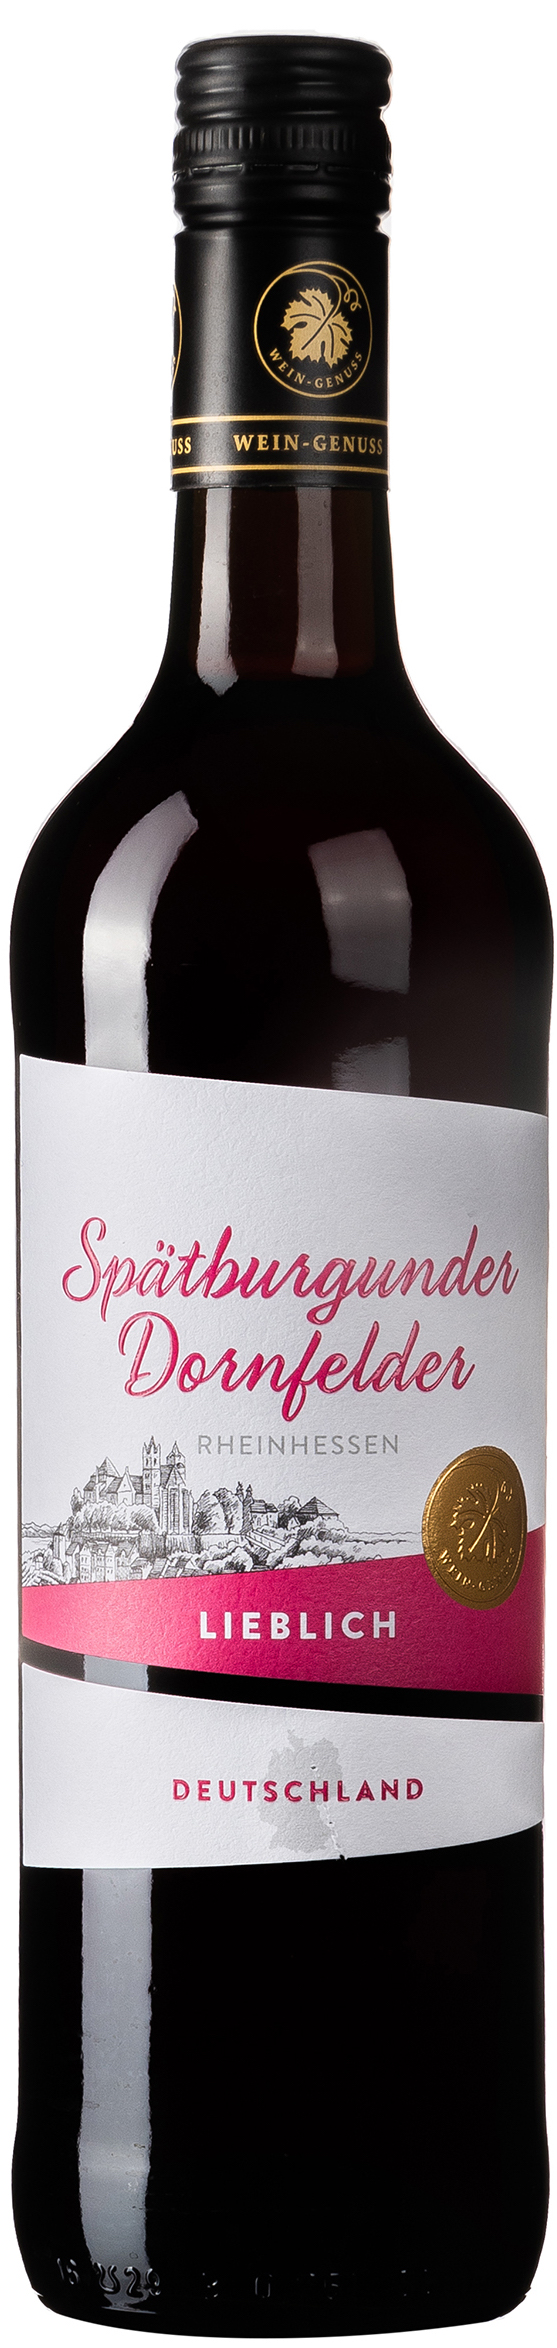 Wein-Genuss Spätburgunder Dornfelder Lieblich 10,5% vol. 0,75L